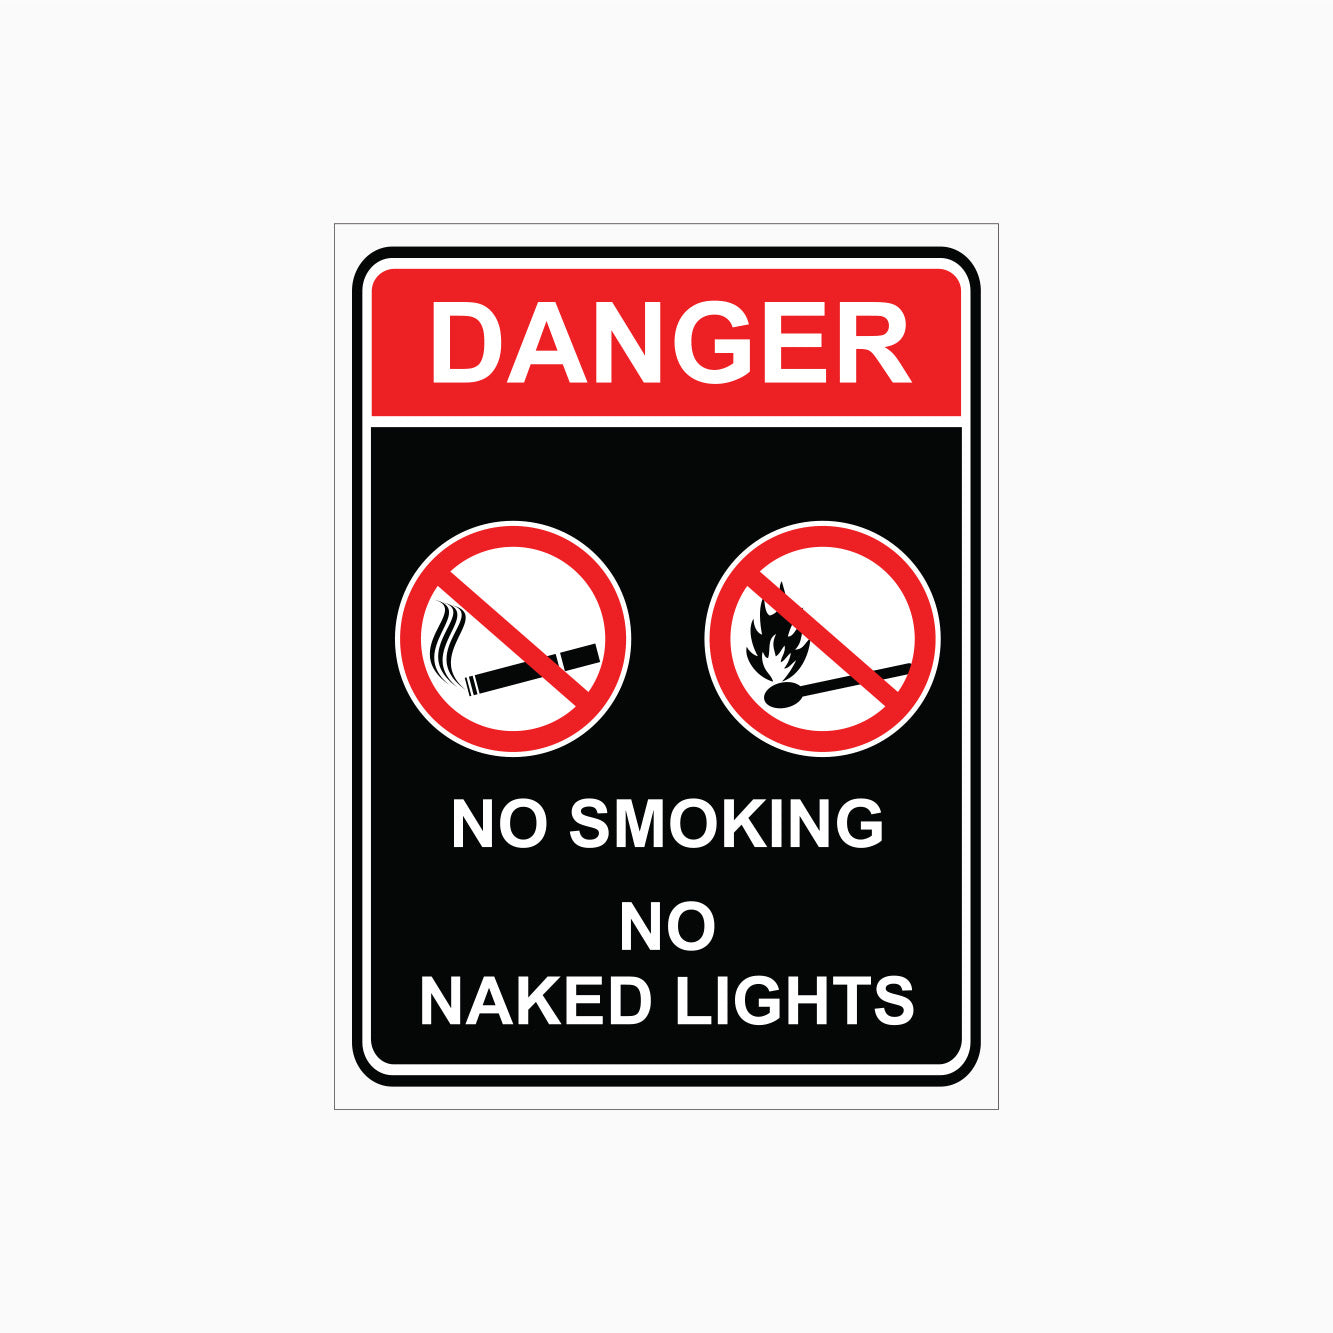 DANGER SIGN - NO SMOKING - NO NAKED LIGHTS SIGN